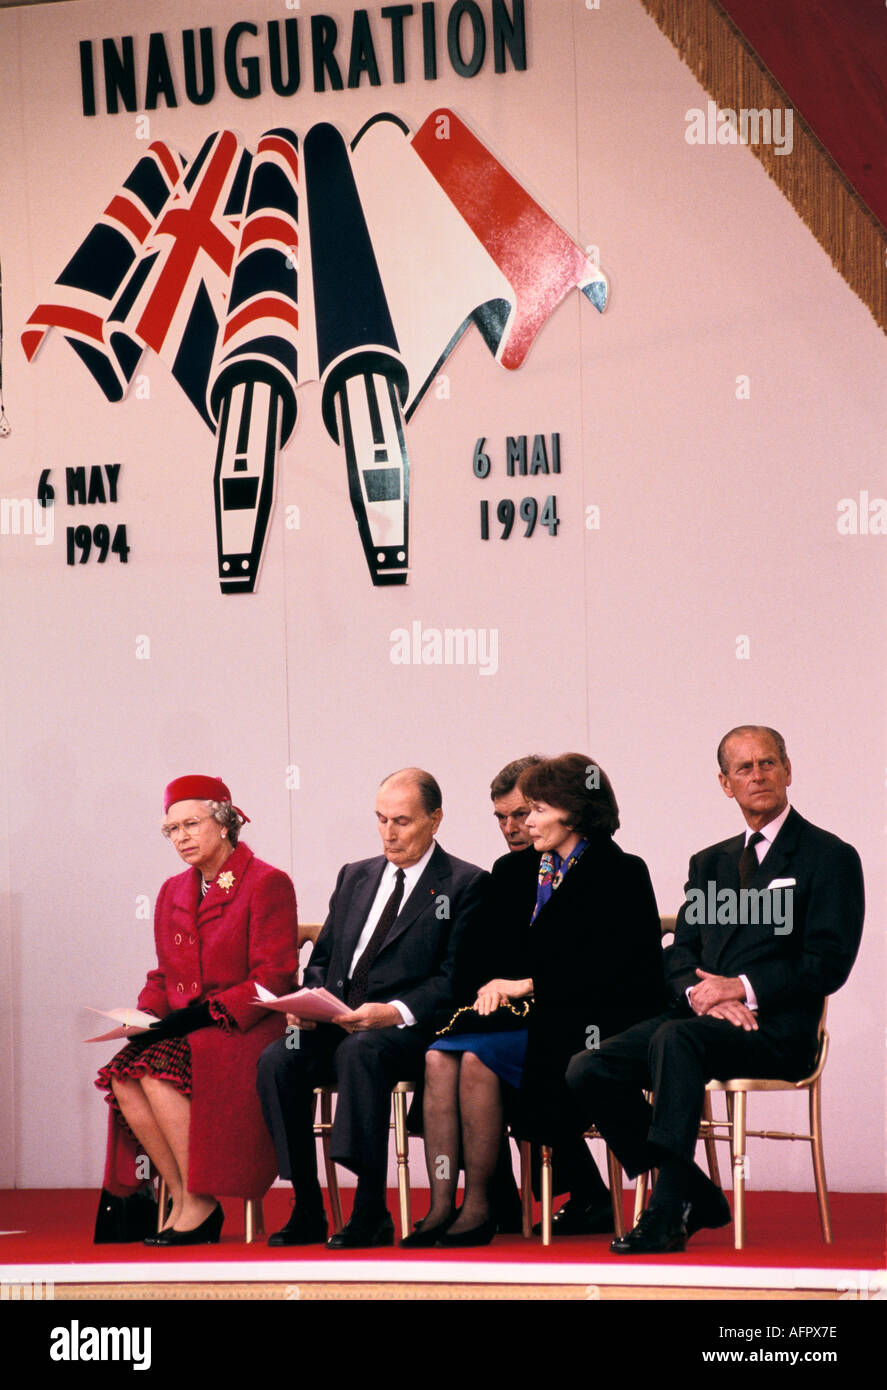 Königin Elizabeth und Präsident Mitterrand von Frankreich am Kanal Tunnel Le Shuttle Einweihung Folkestone Kent 6. Mai 1994 UK HOMER SYKES der 1990er Jahre Stockfoto